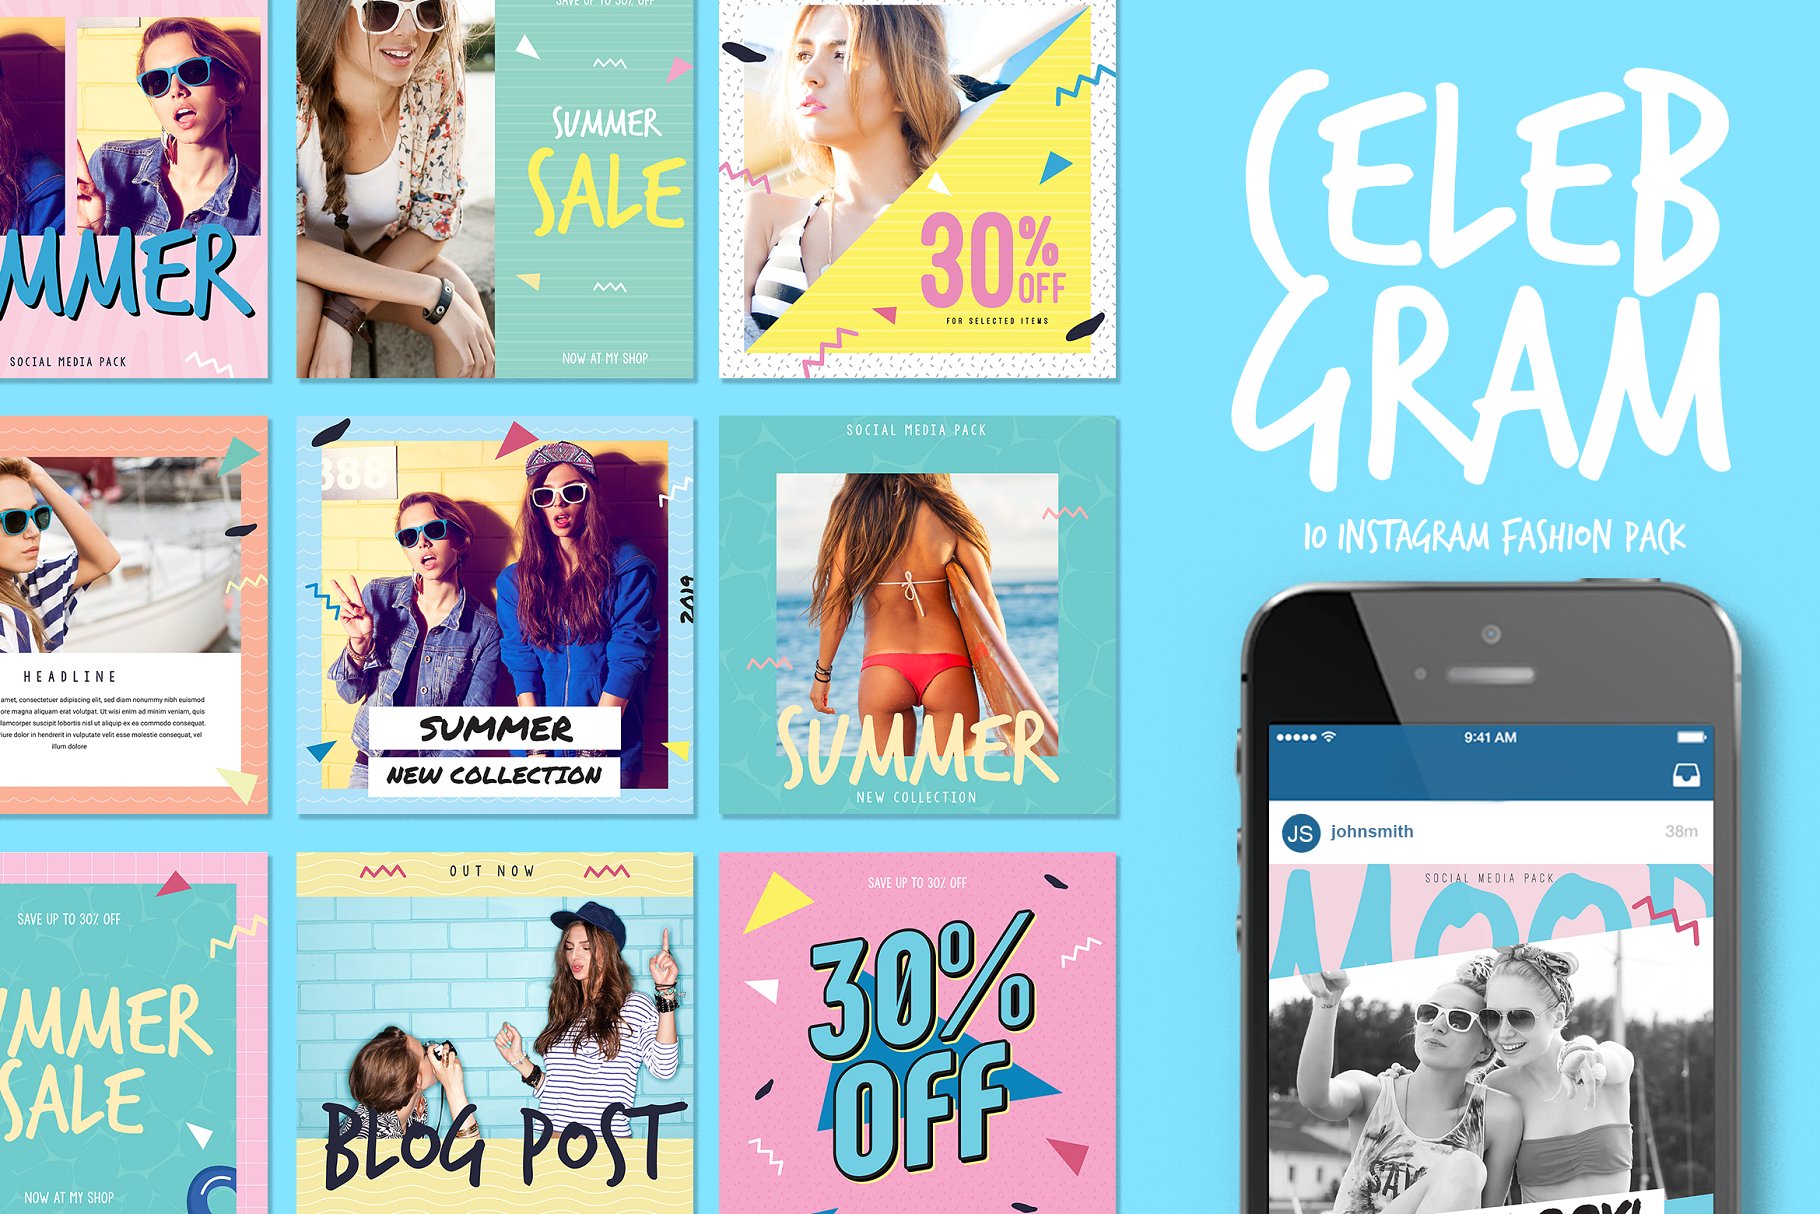 高品质时尚社交媒体INS帖子模板16设计网精选 Celebgram_Instagram Fashion Pack插图